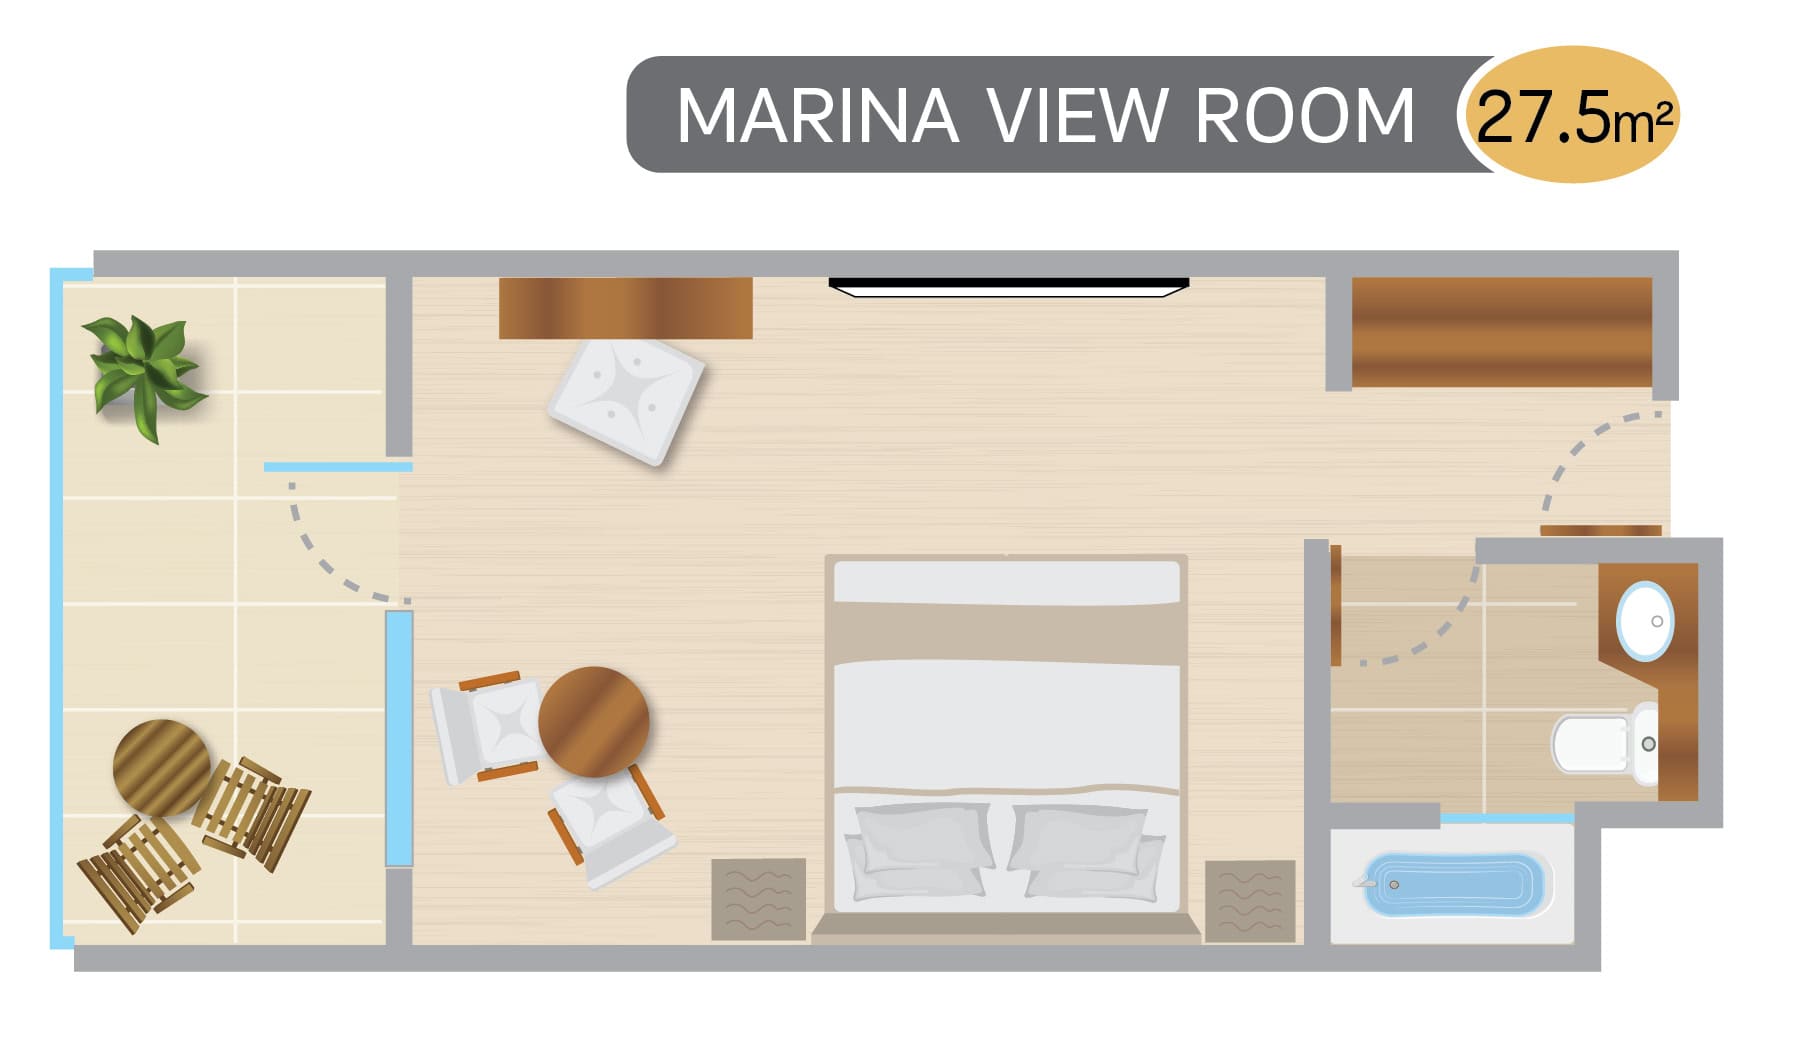 Marina View Room